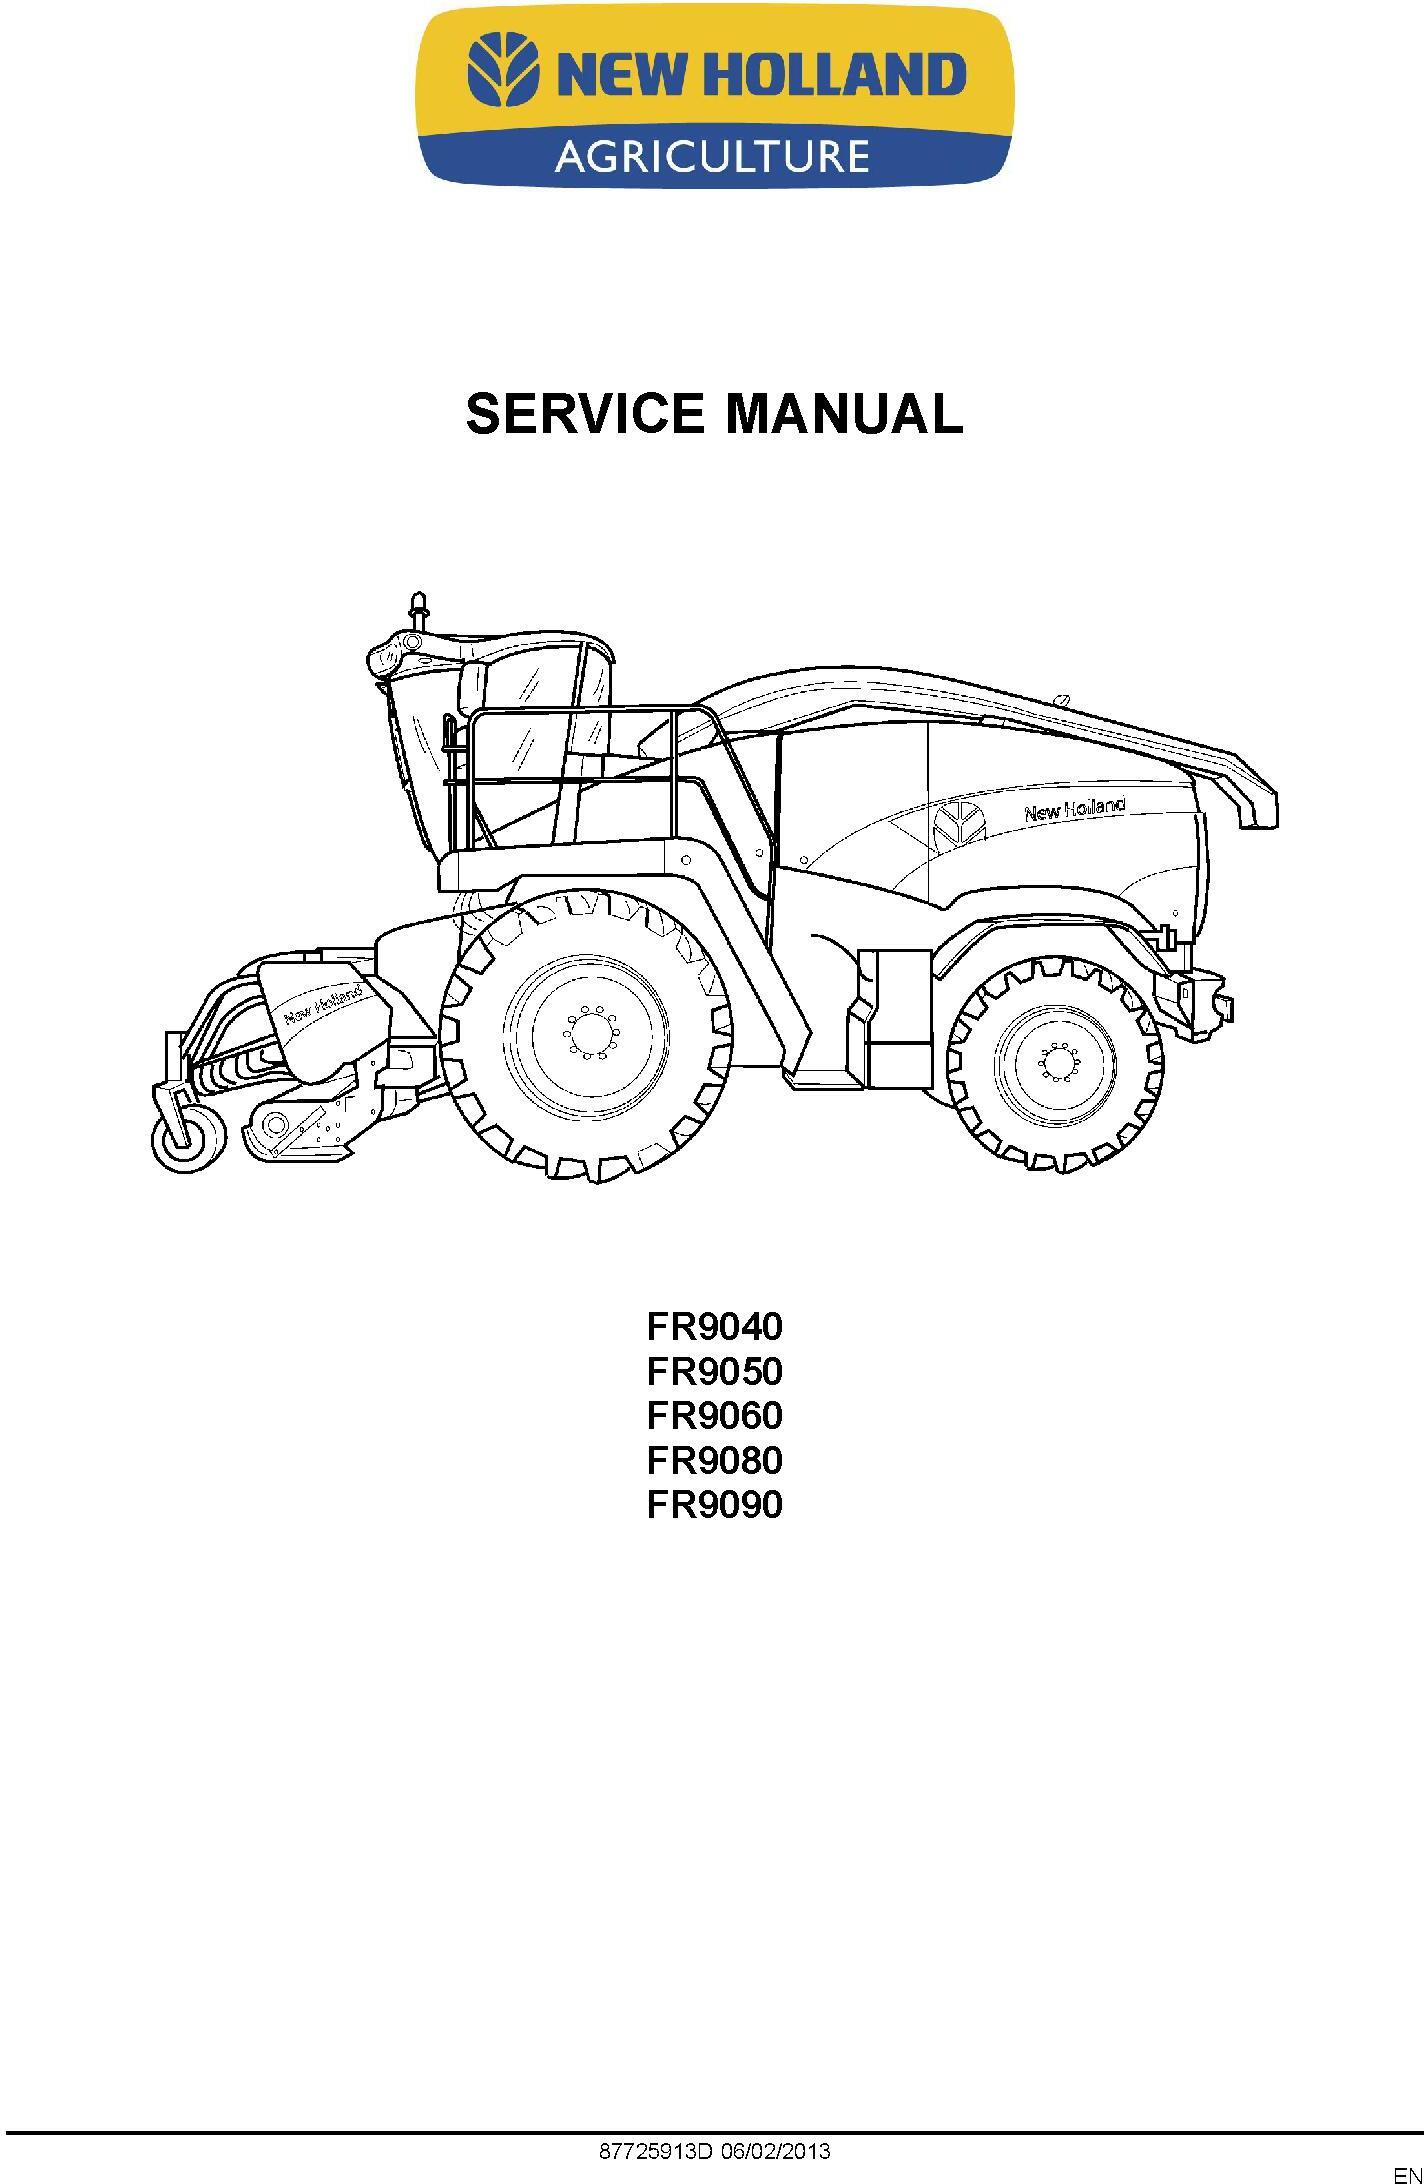 New Holland FR9040, FR9050, FR9060, FR9080, FR9090 Forage Harvester Service Manual - 1